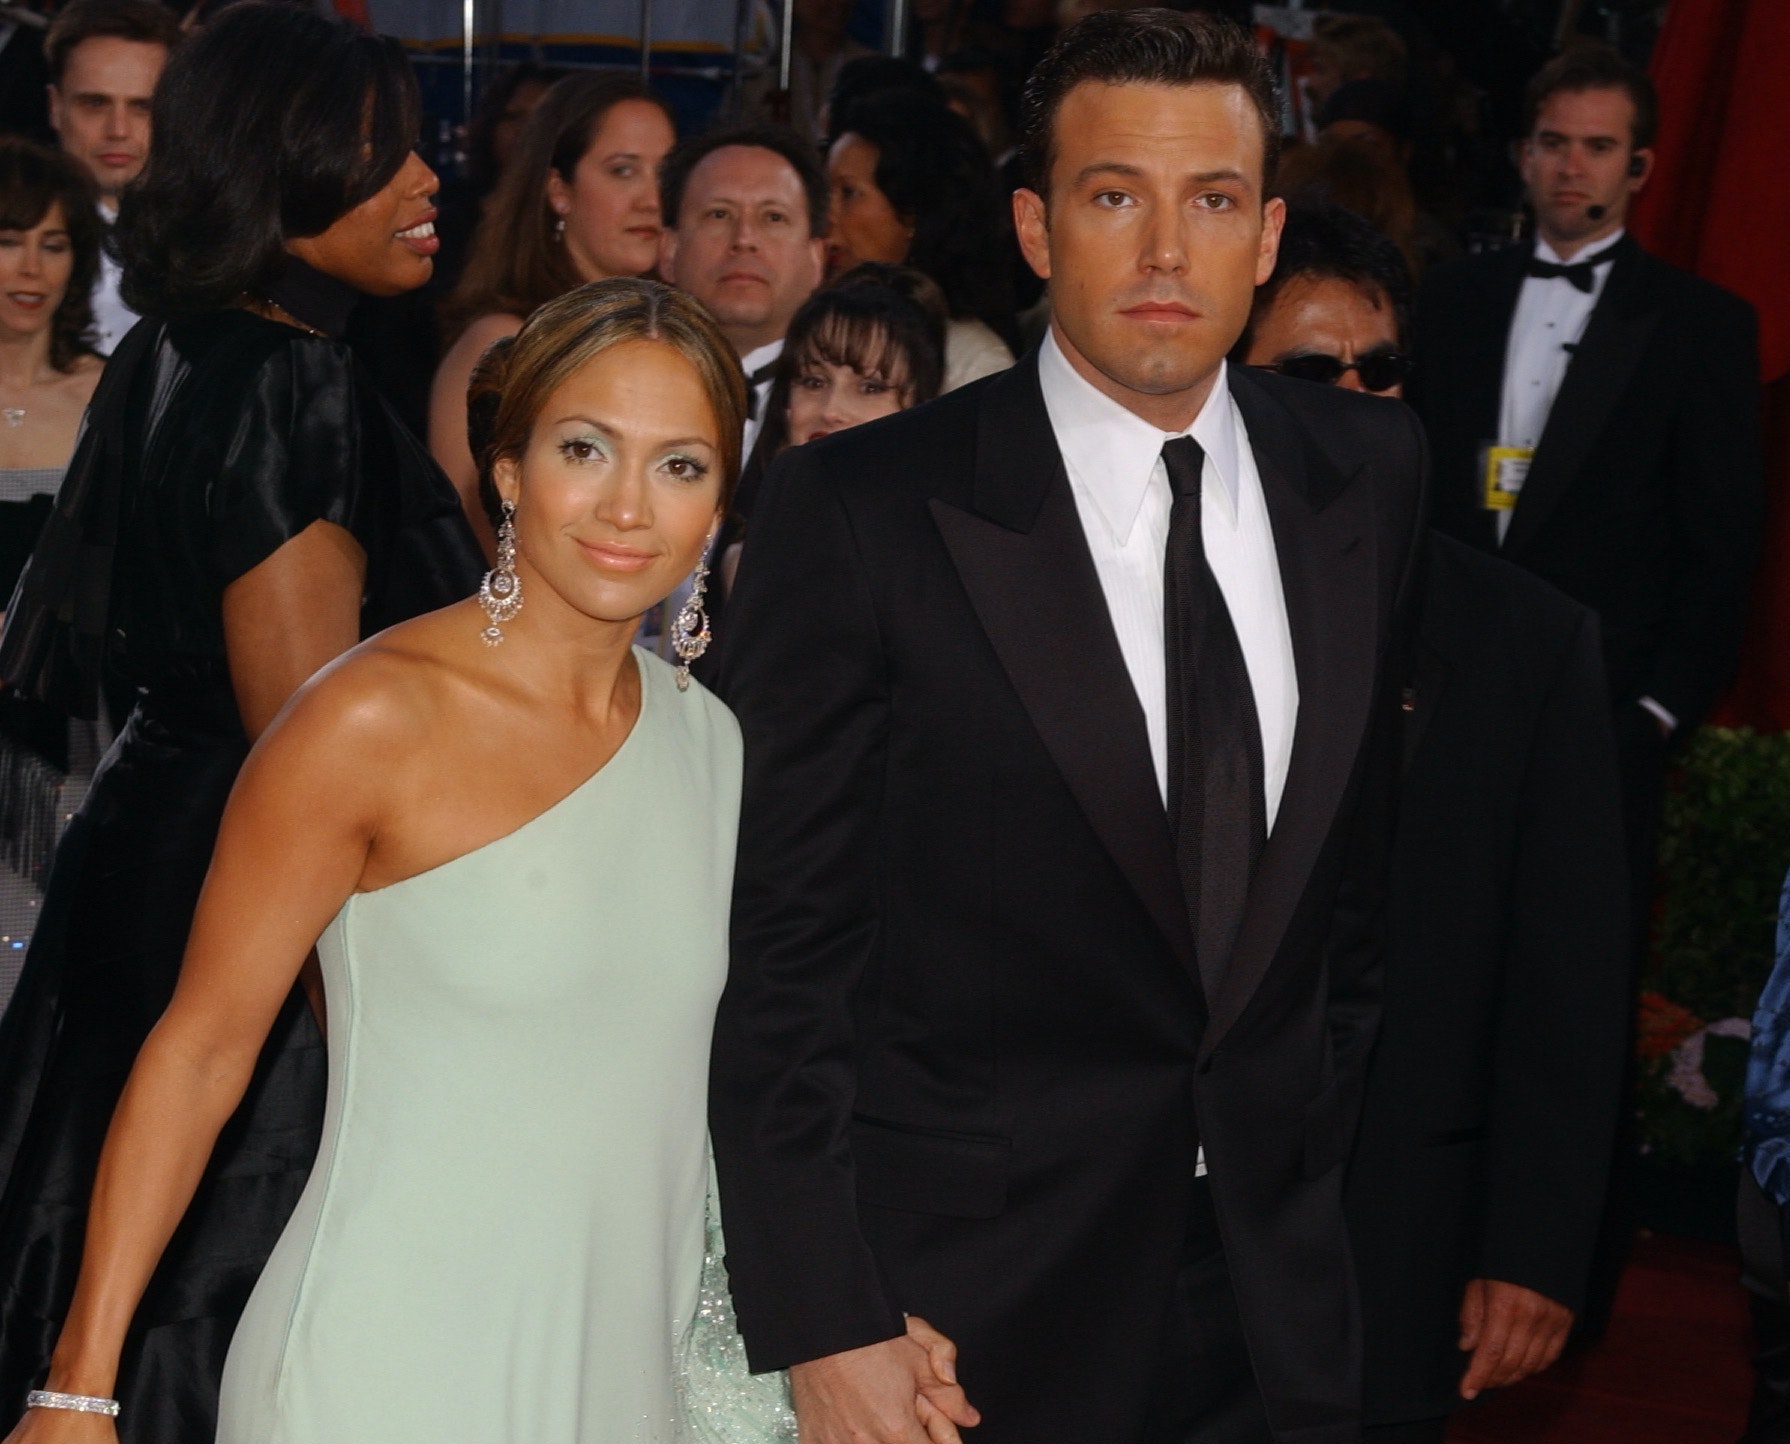 Ben Affleck husker de 'stygge, onde' tingene som ble sagt om J.Lo under forholdet deres